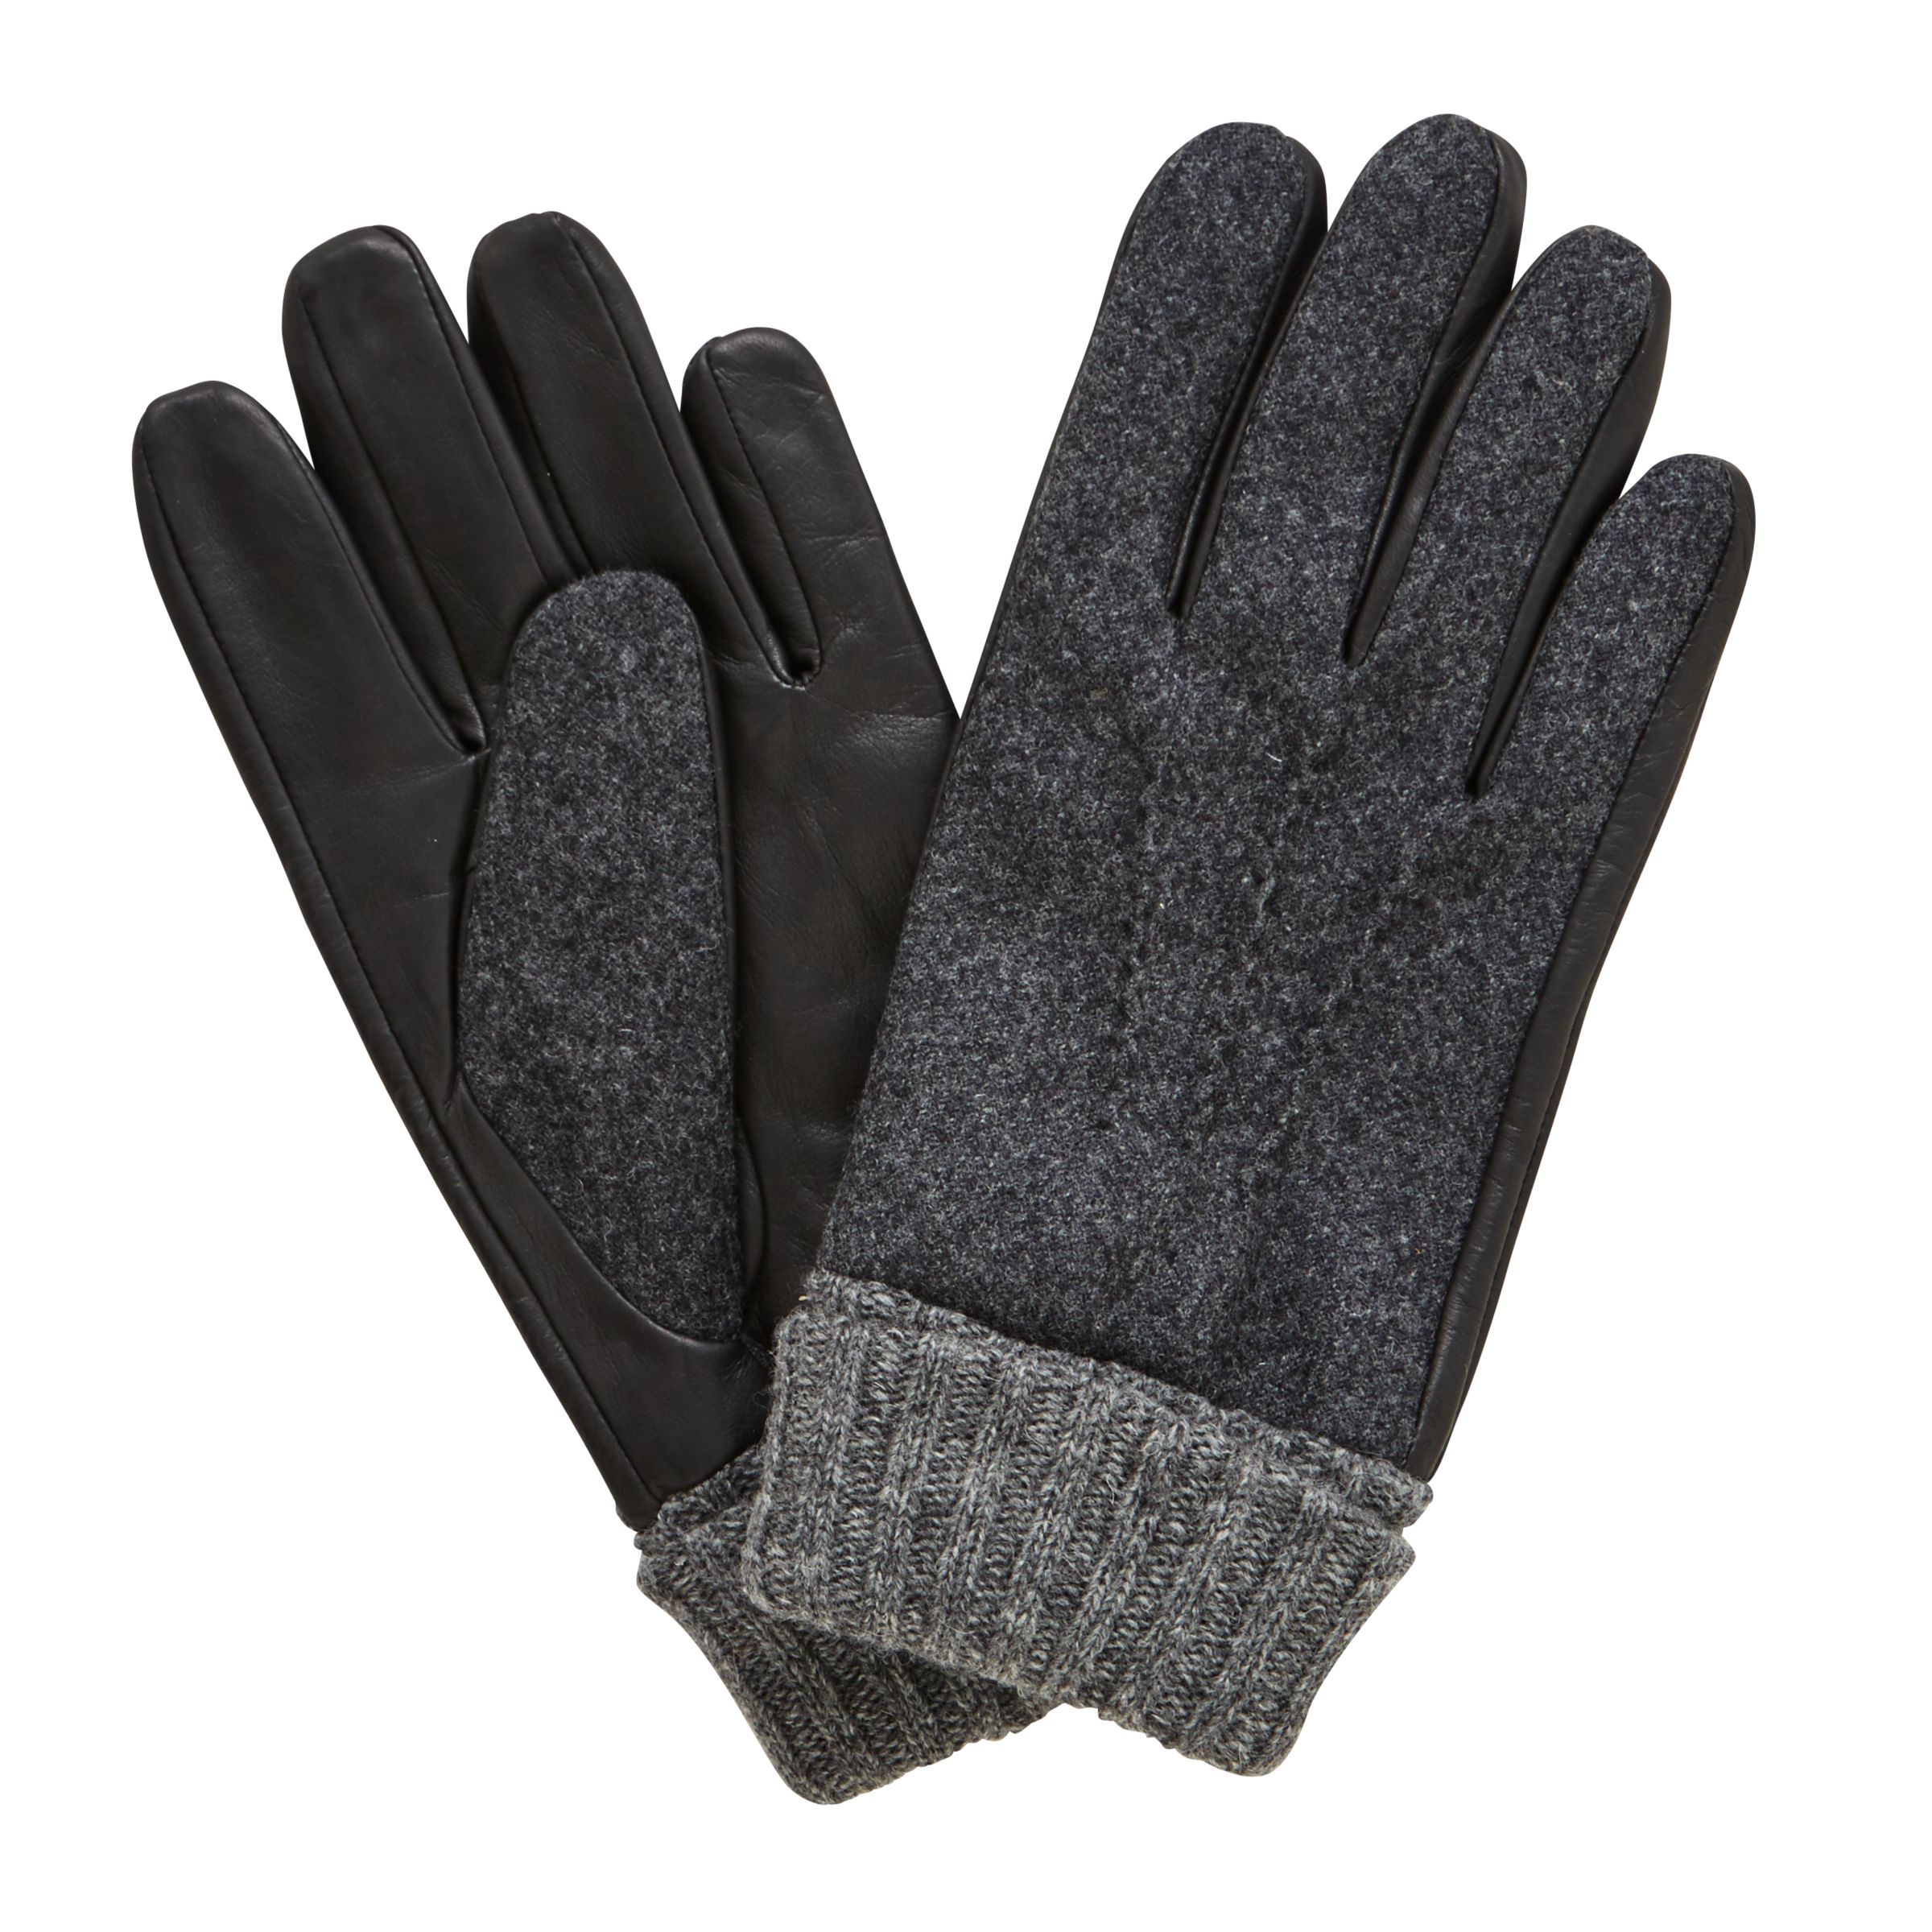 John Lewis Wool Leather Gloves, Black at John Lewis & Partners